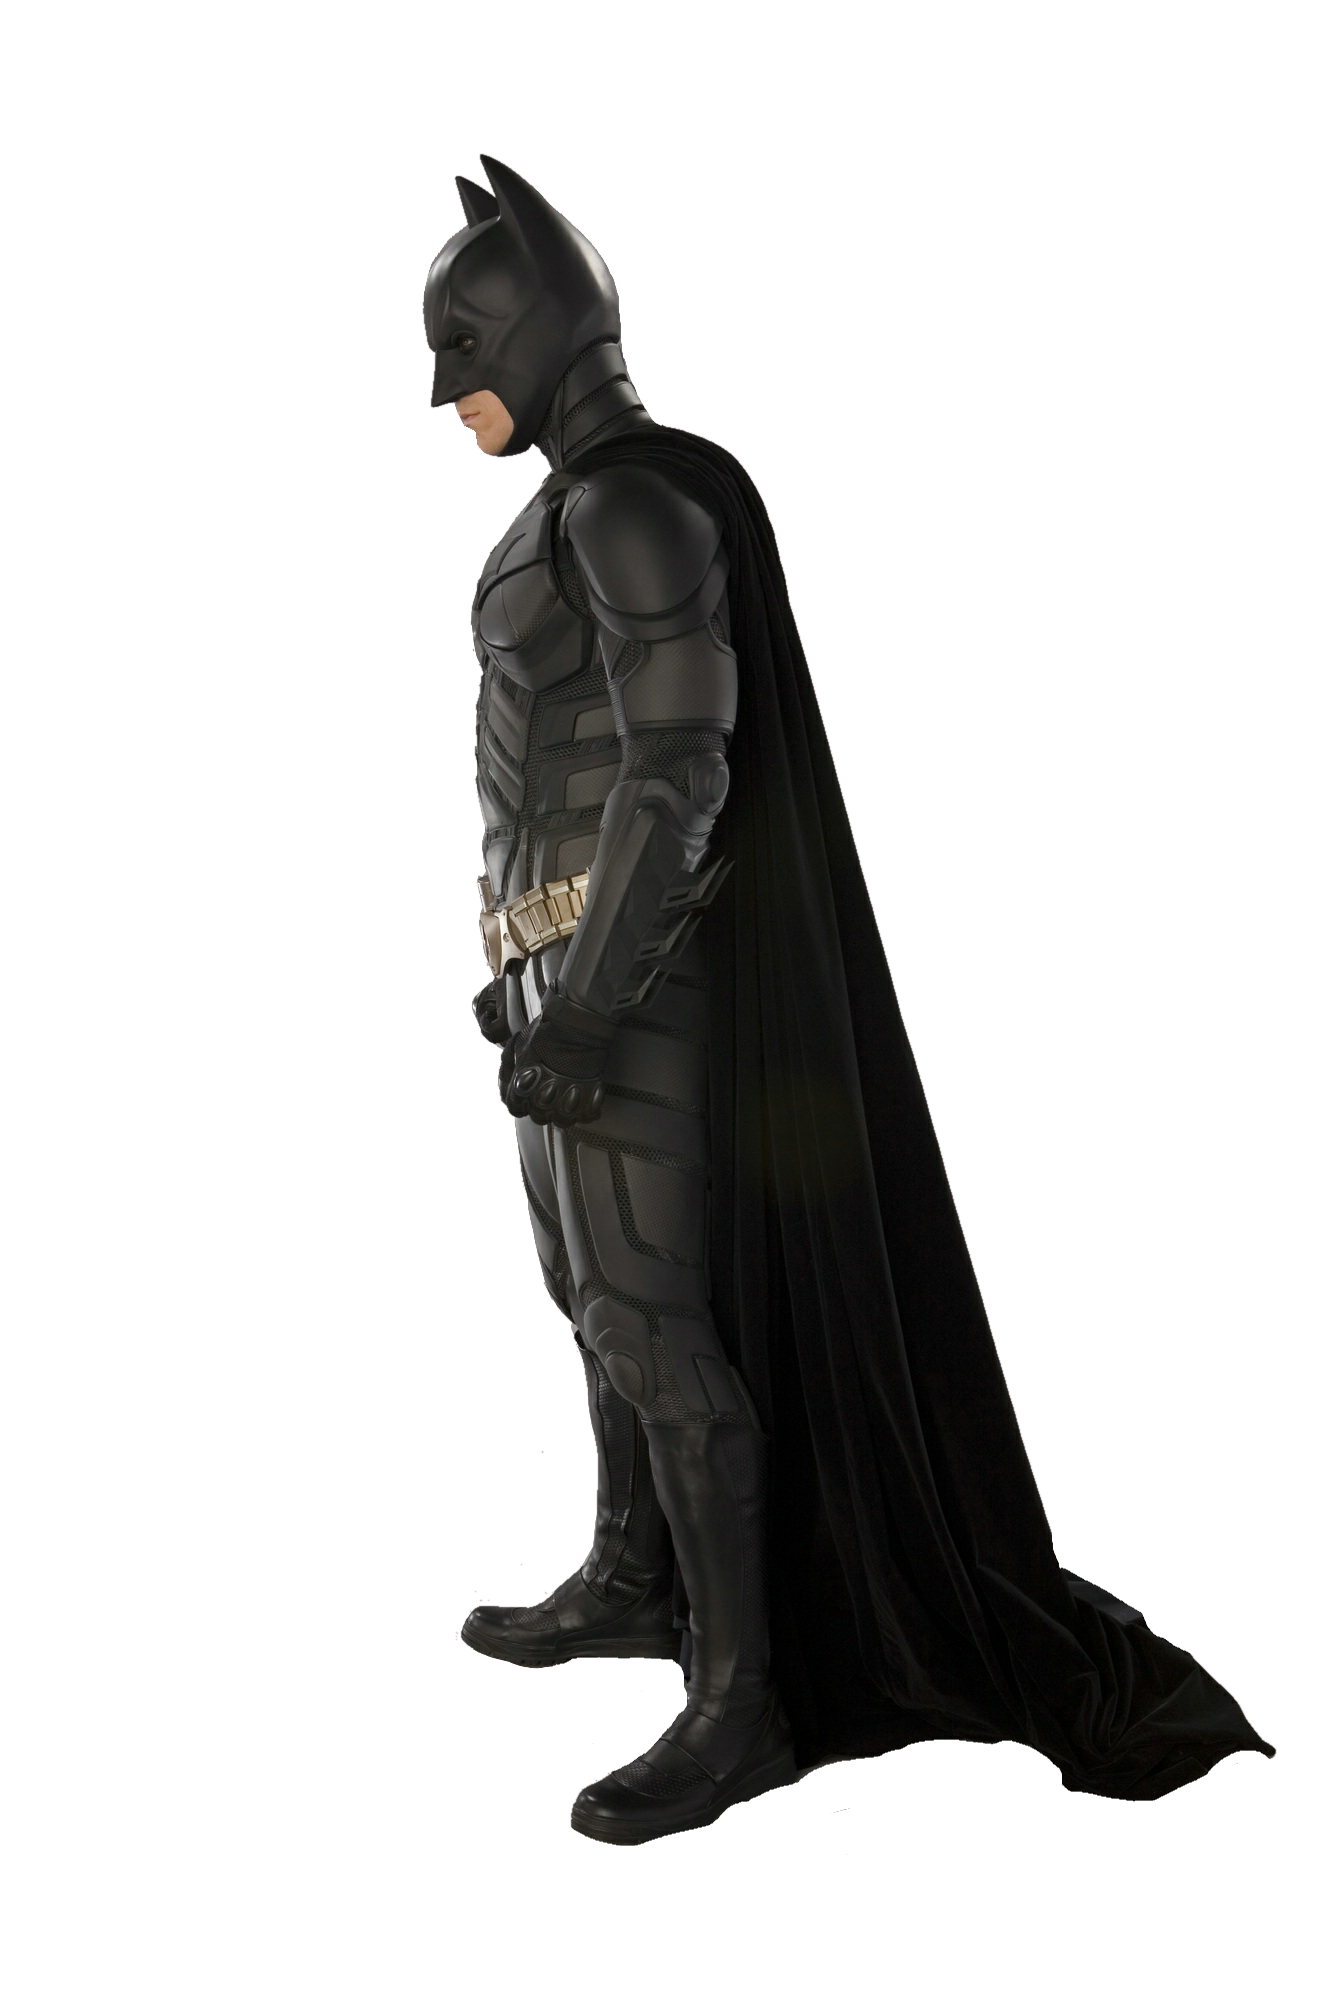 Imagem de fundo do Batman PNG do cavaleiro escuro